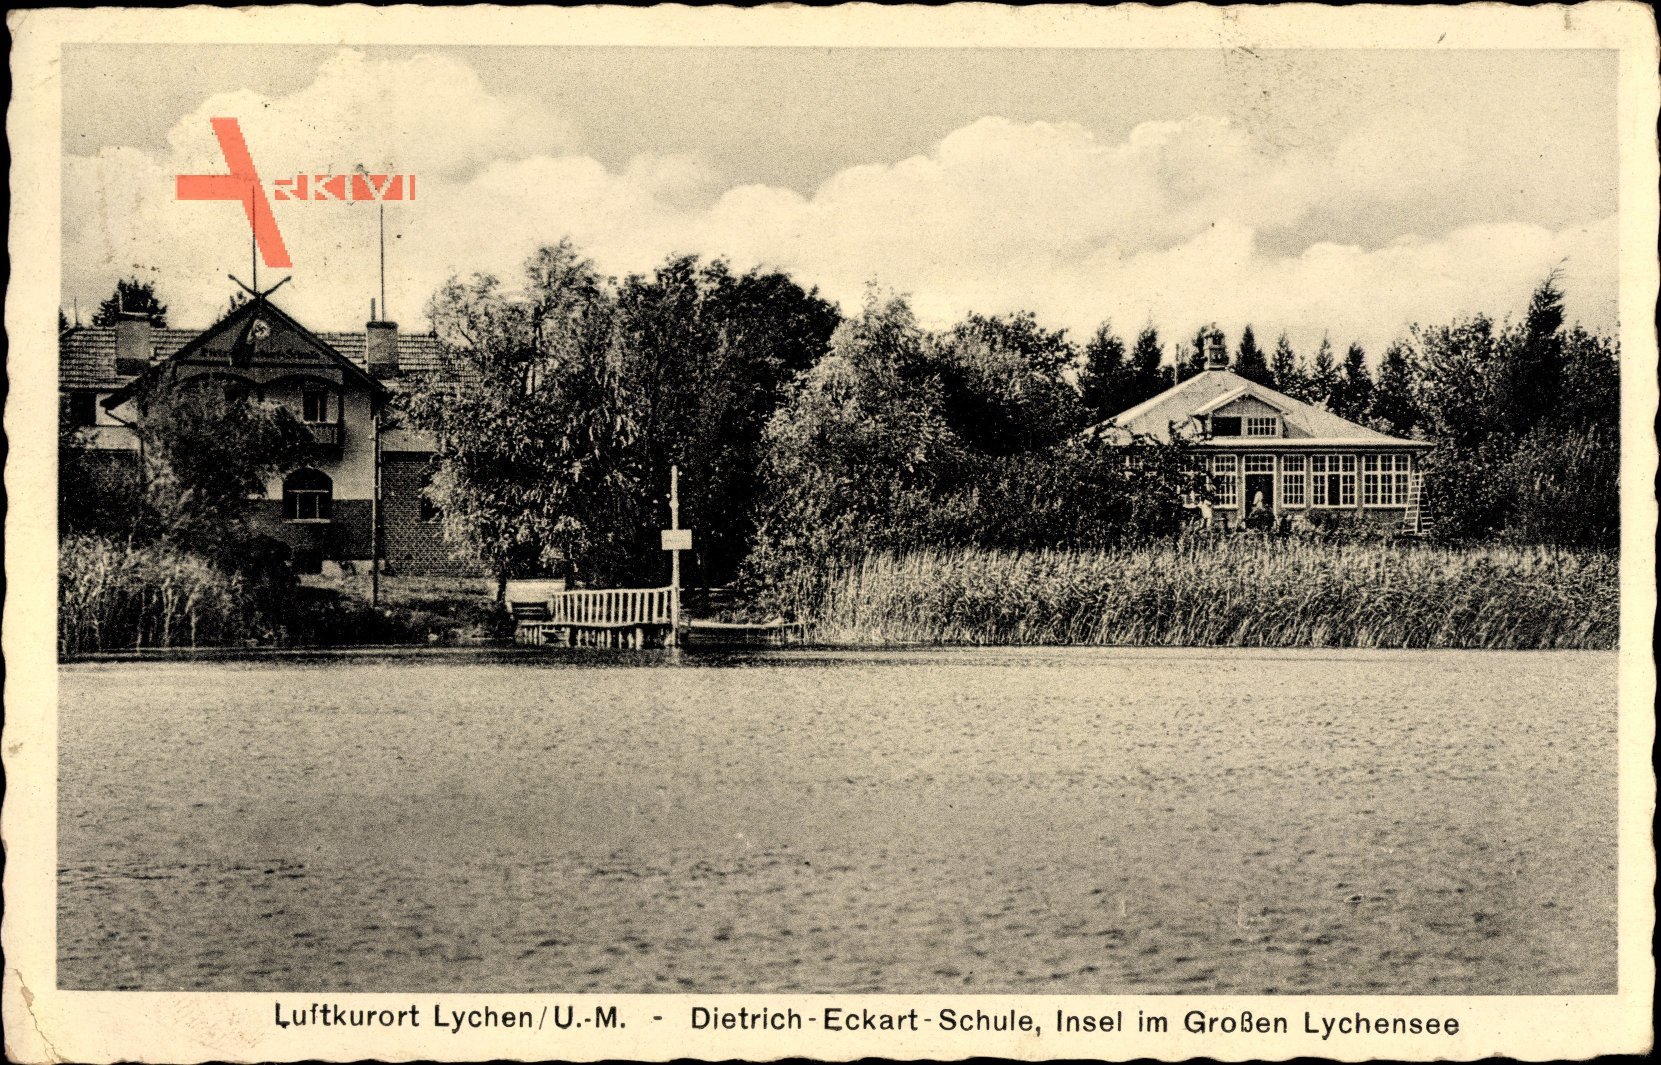 Lychen im Kreis Uckermark, Dietrich Eckart Schule, Insel im Großen Lychensee, Hakenkreuz